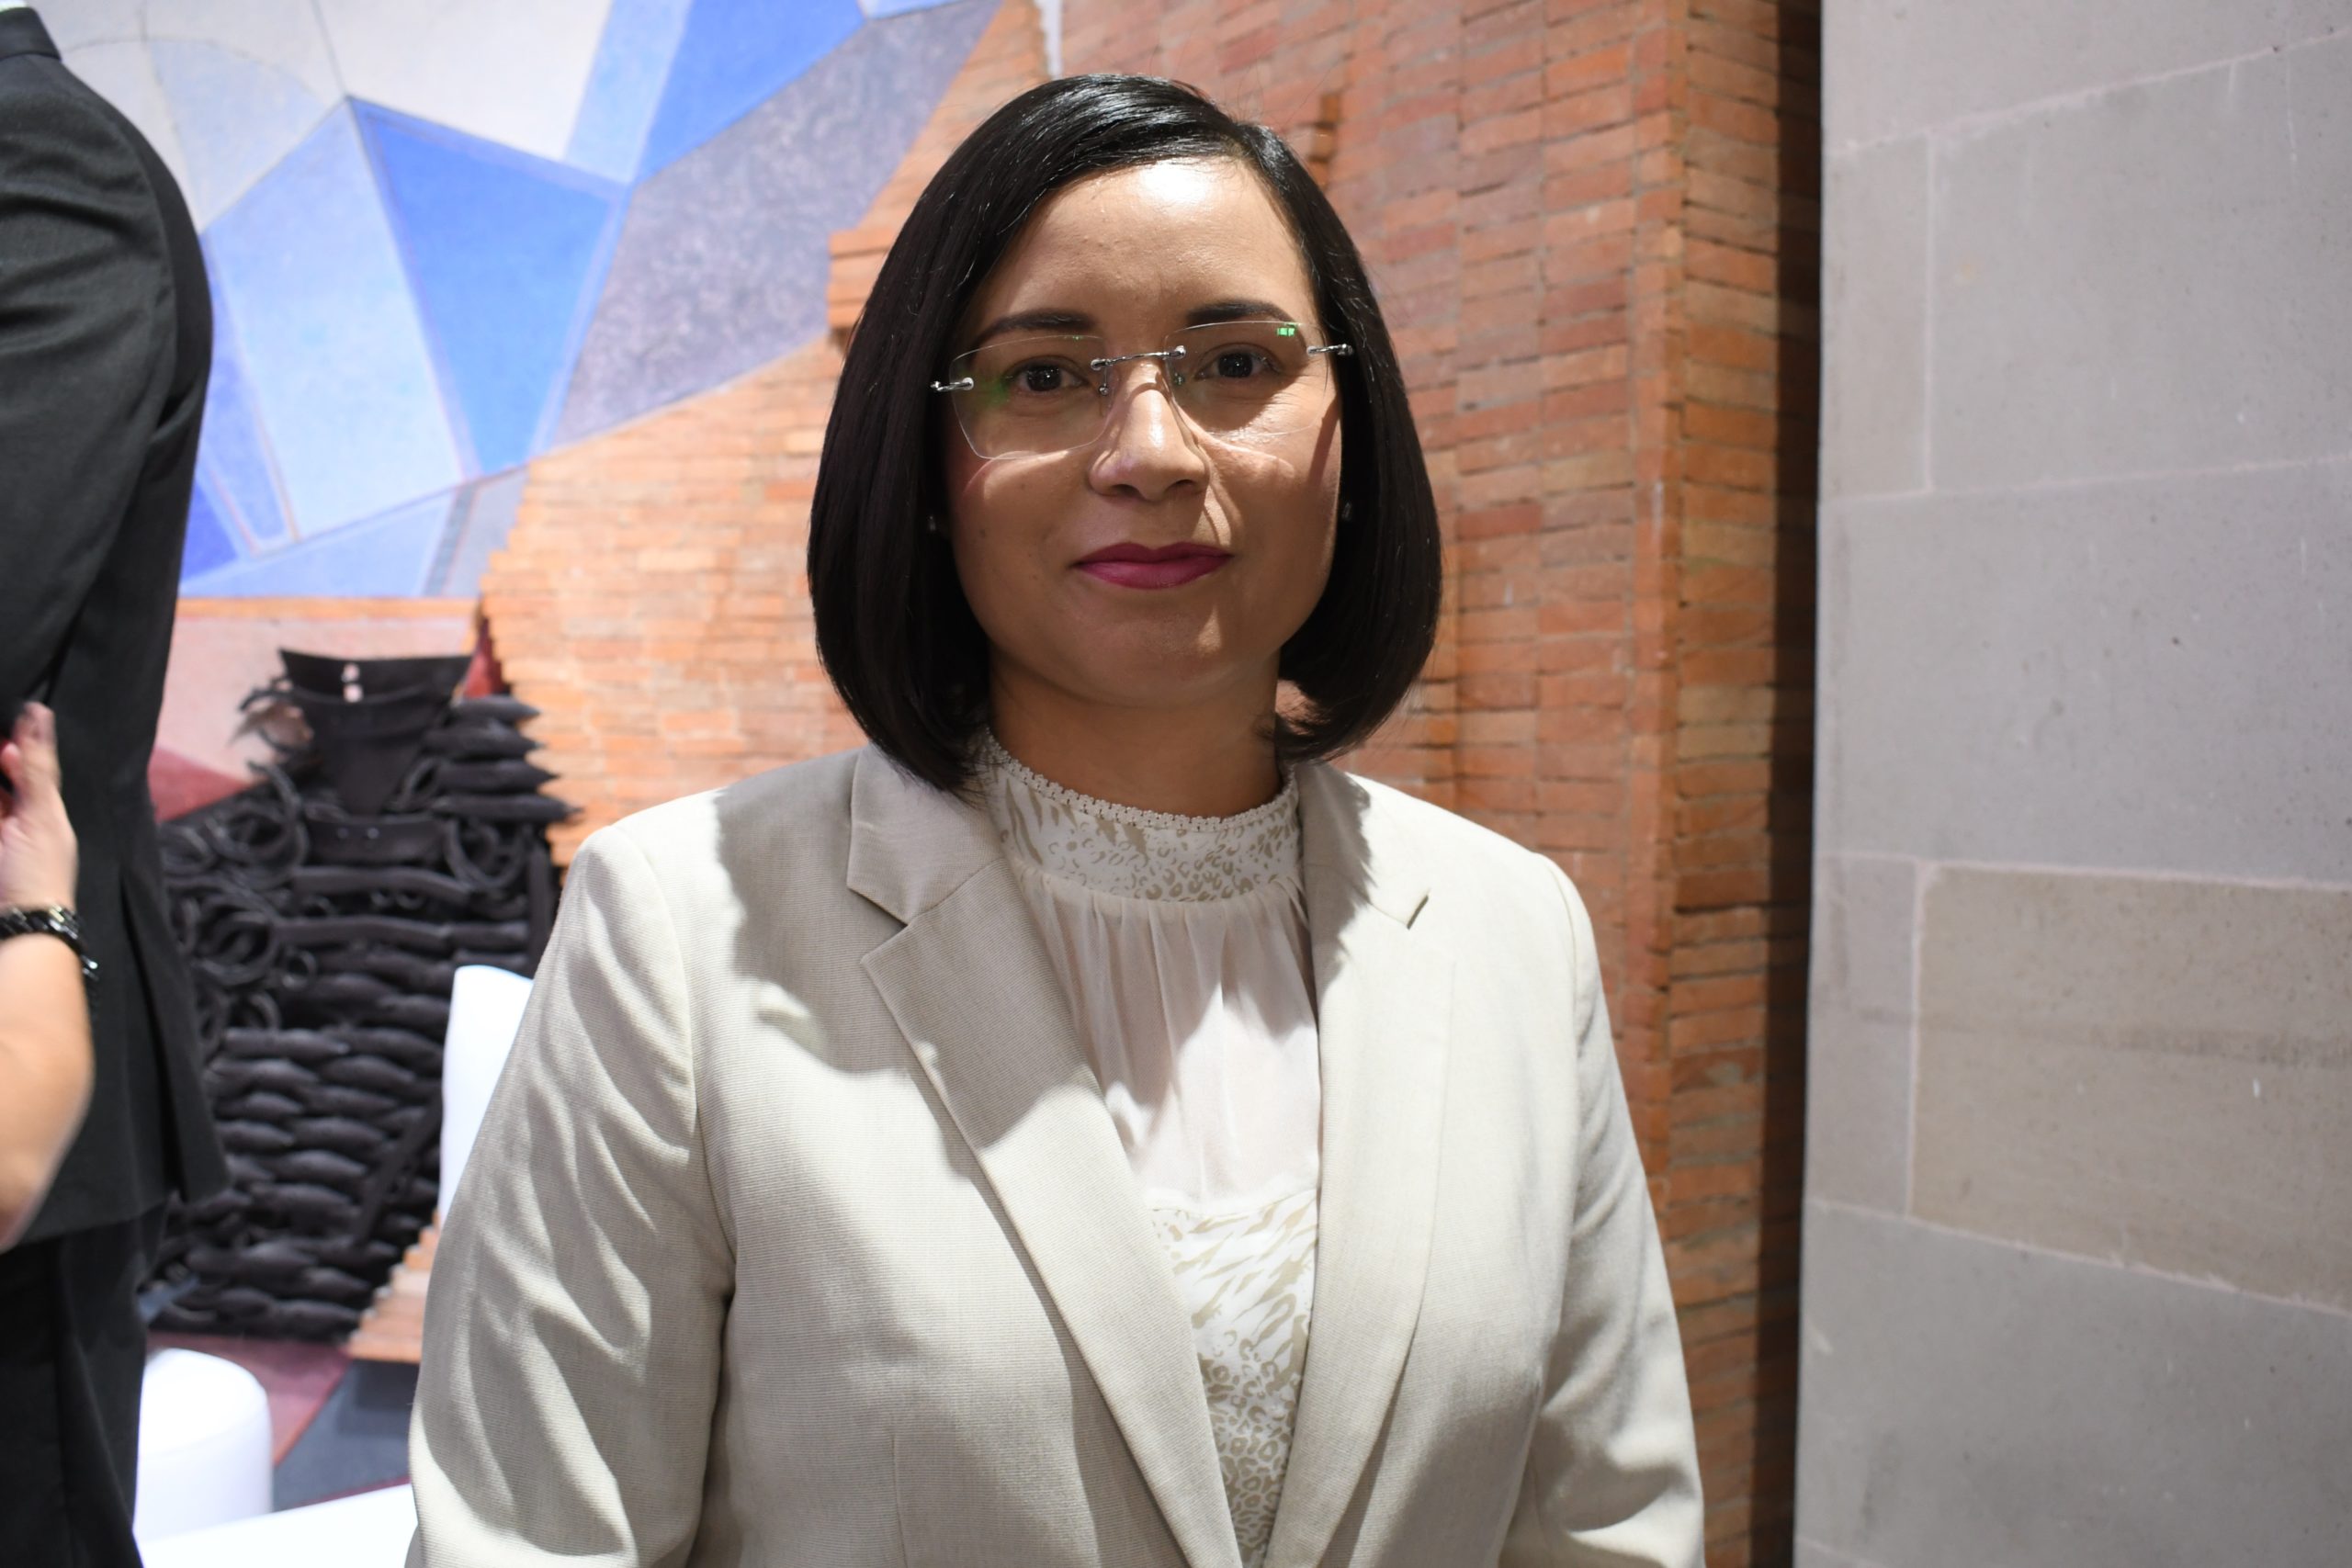  María de la Luz Domínguez Campos, Presidenta de la Comisión de Derechos Humanos del Estado de Zacatecas. Foto: Cortesía.